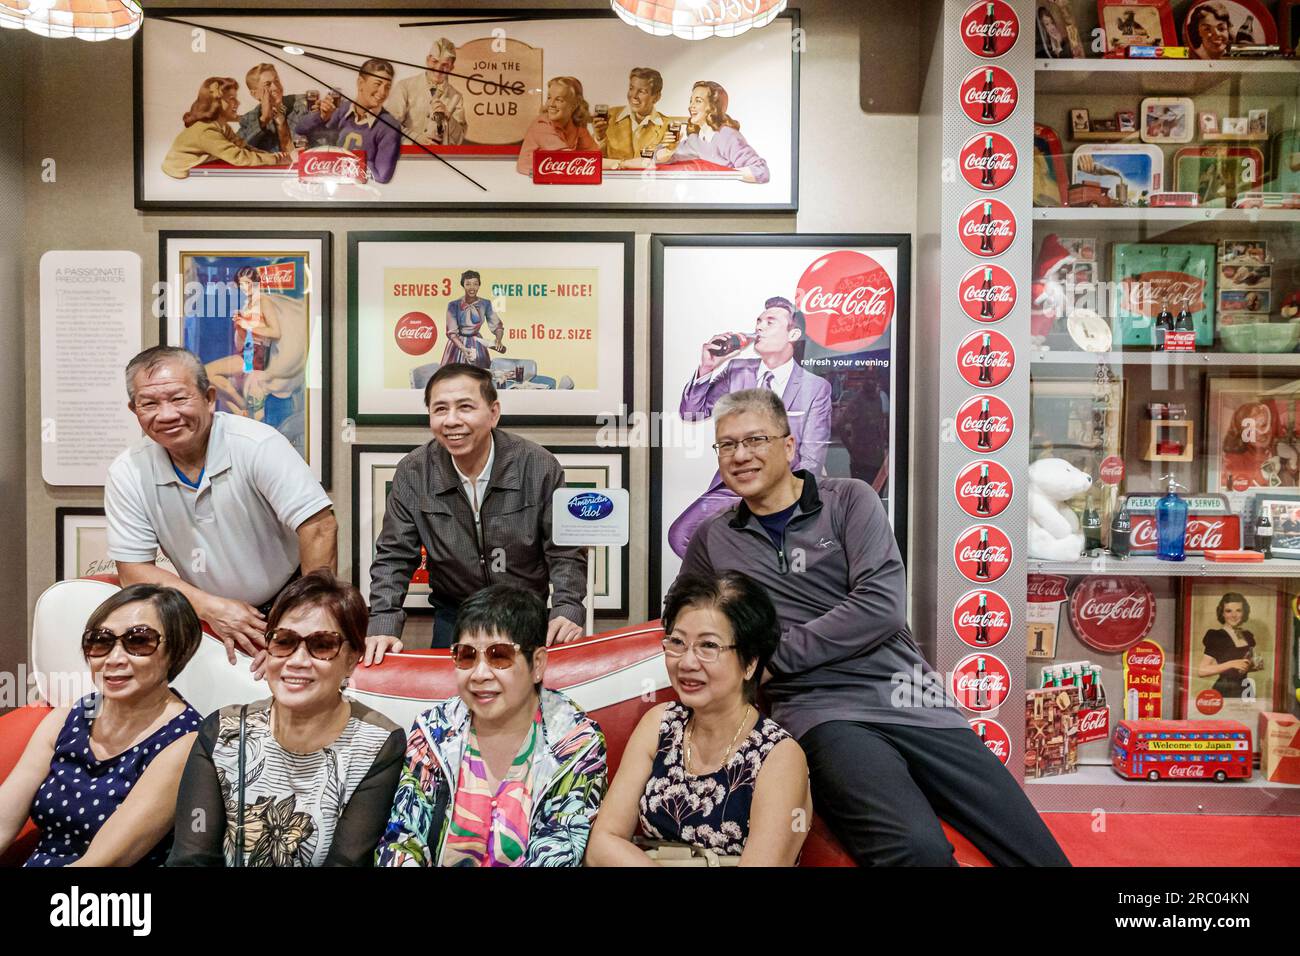 Atlanta Géorgie, exposition World of Coca-Cola, intérieur, couples hommes femmes asiatiques posant photo Banque D'Images